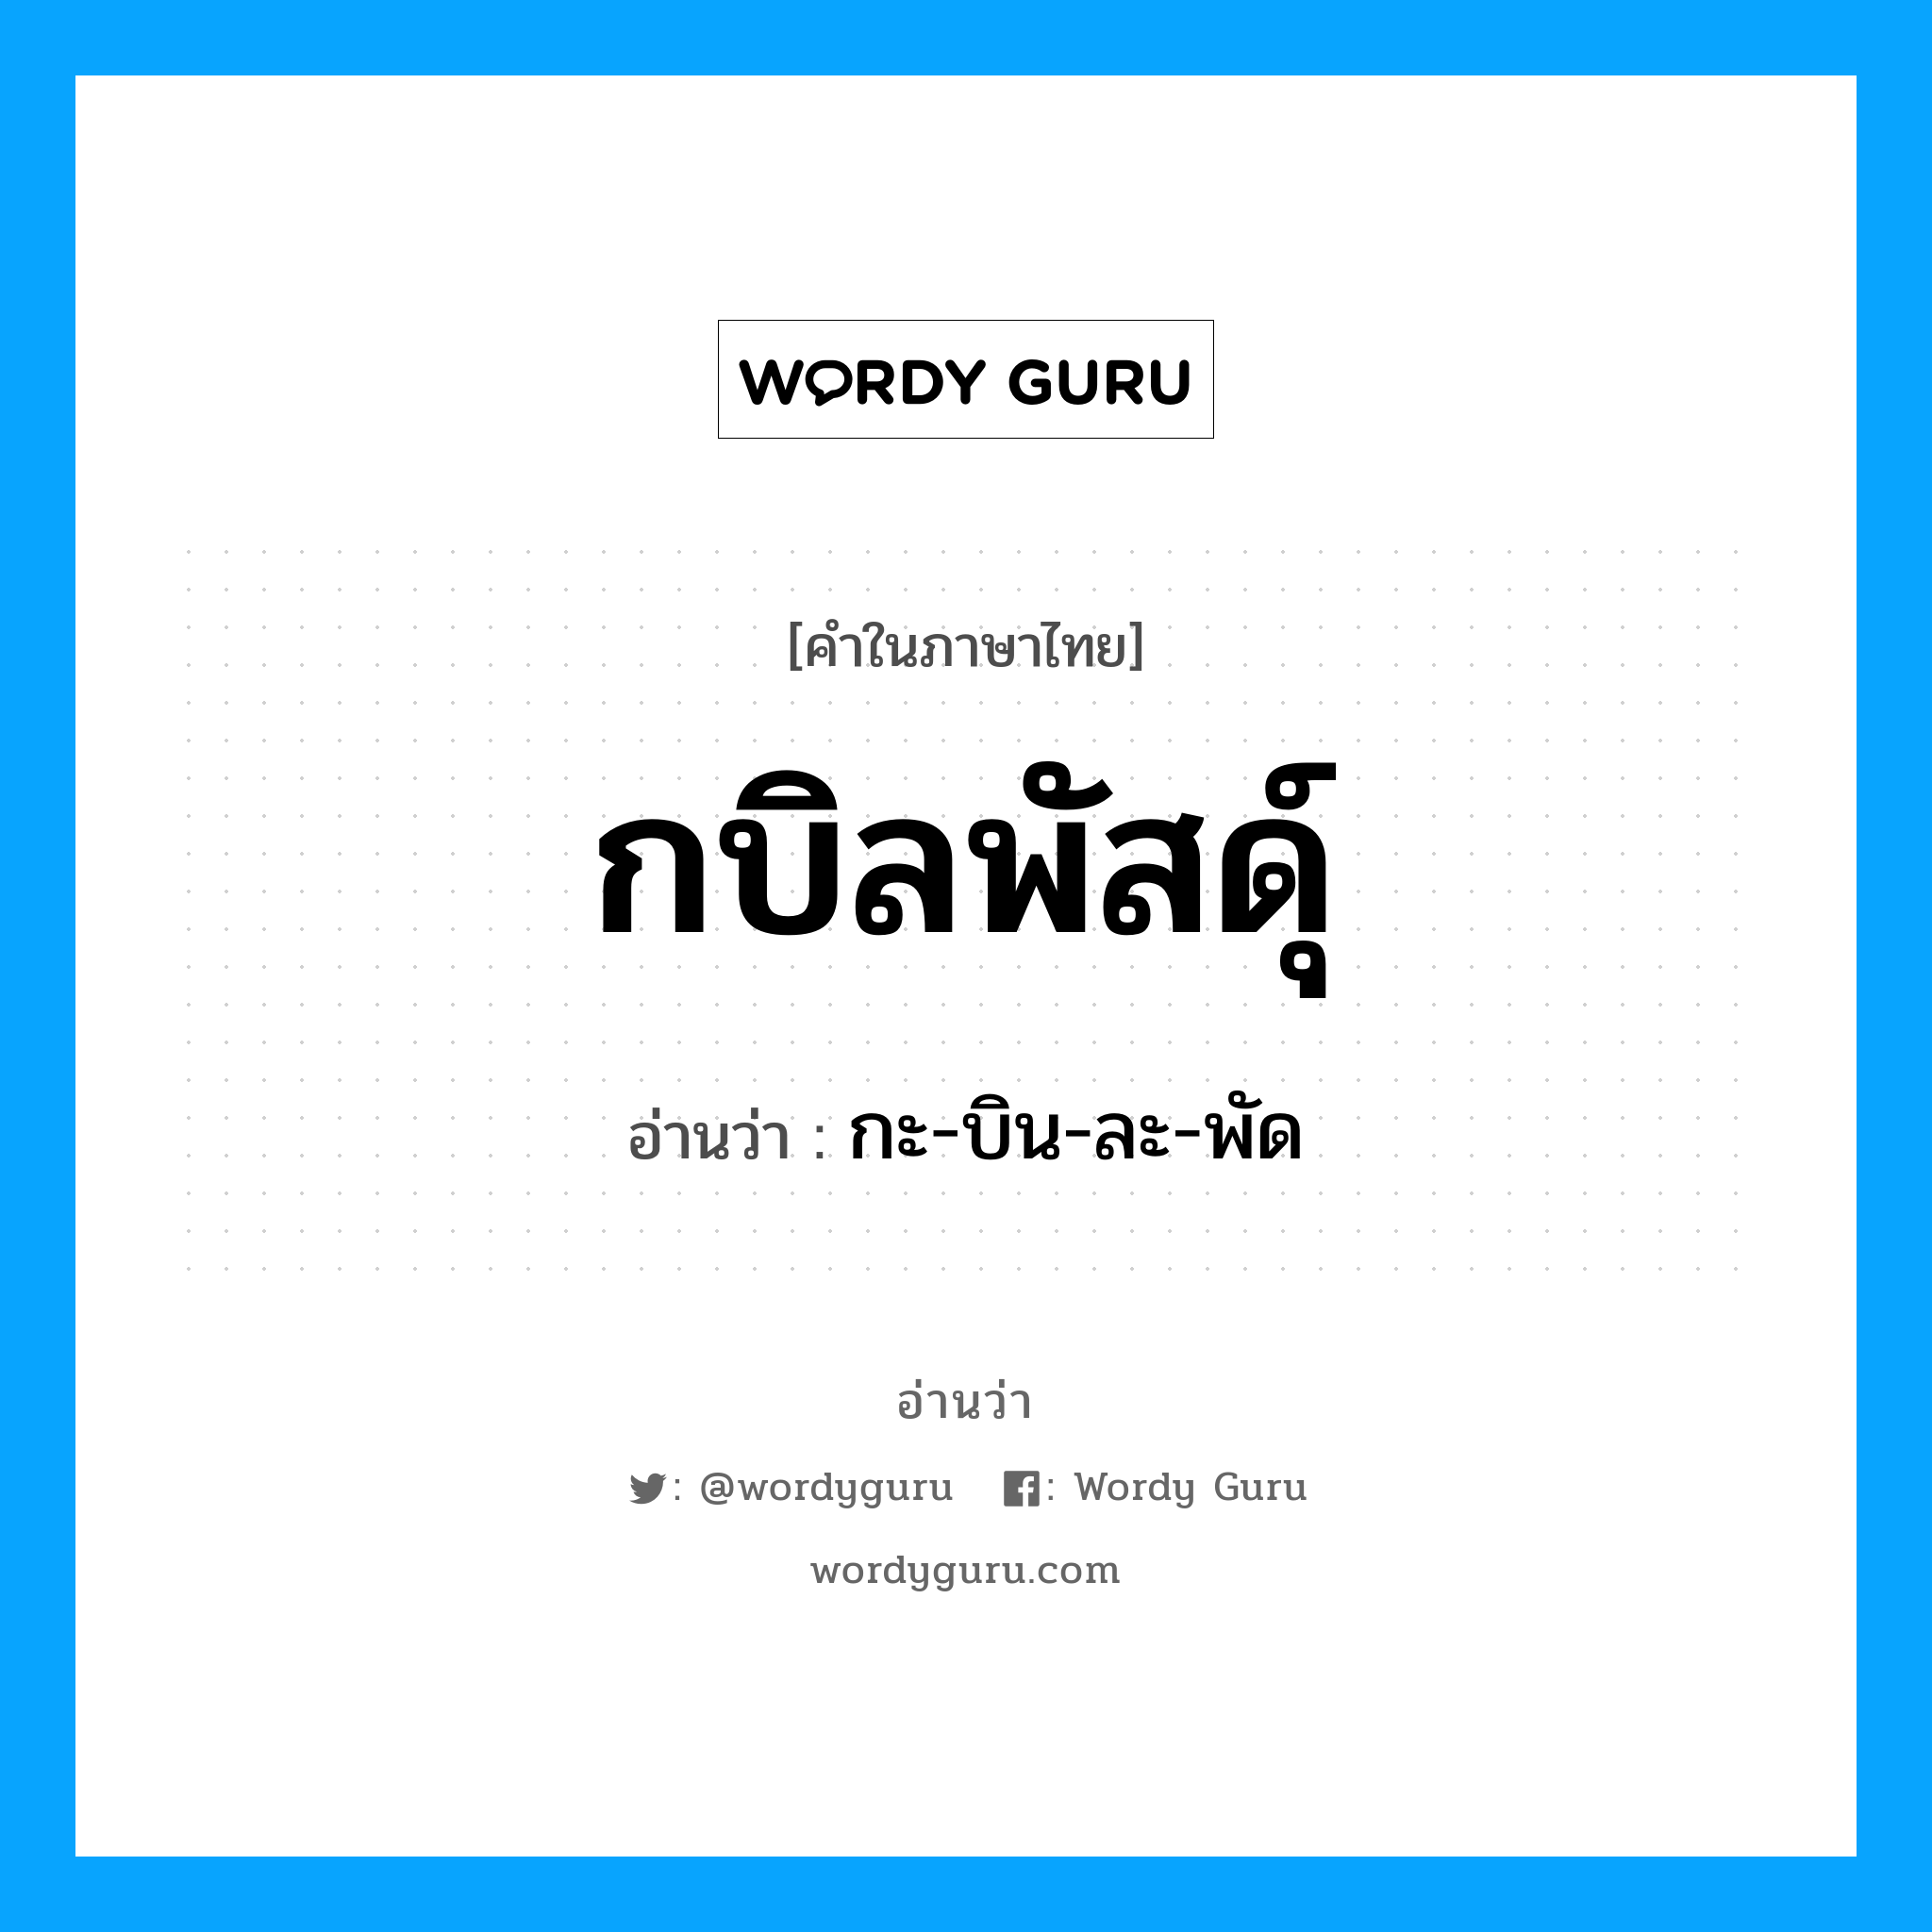 กะ-บิน-ละ-พัด เป็นคำอ่านของคำไหน?, คำในภาษาไทย กะ-บิน-ละ-พัด อ่านว่า กบิลพัสดุ์